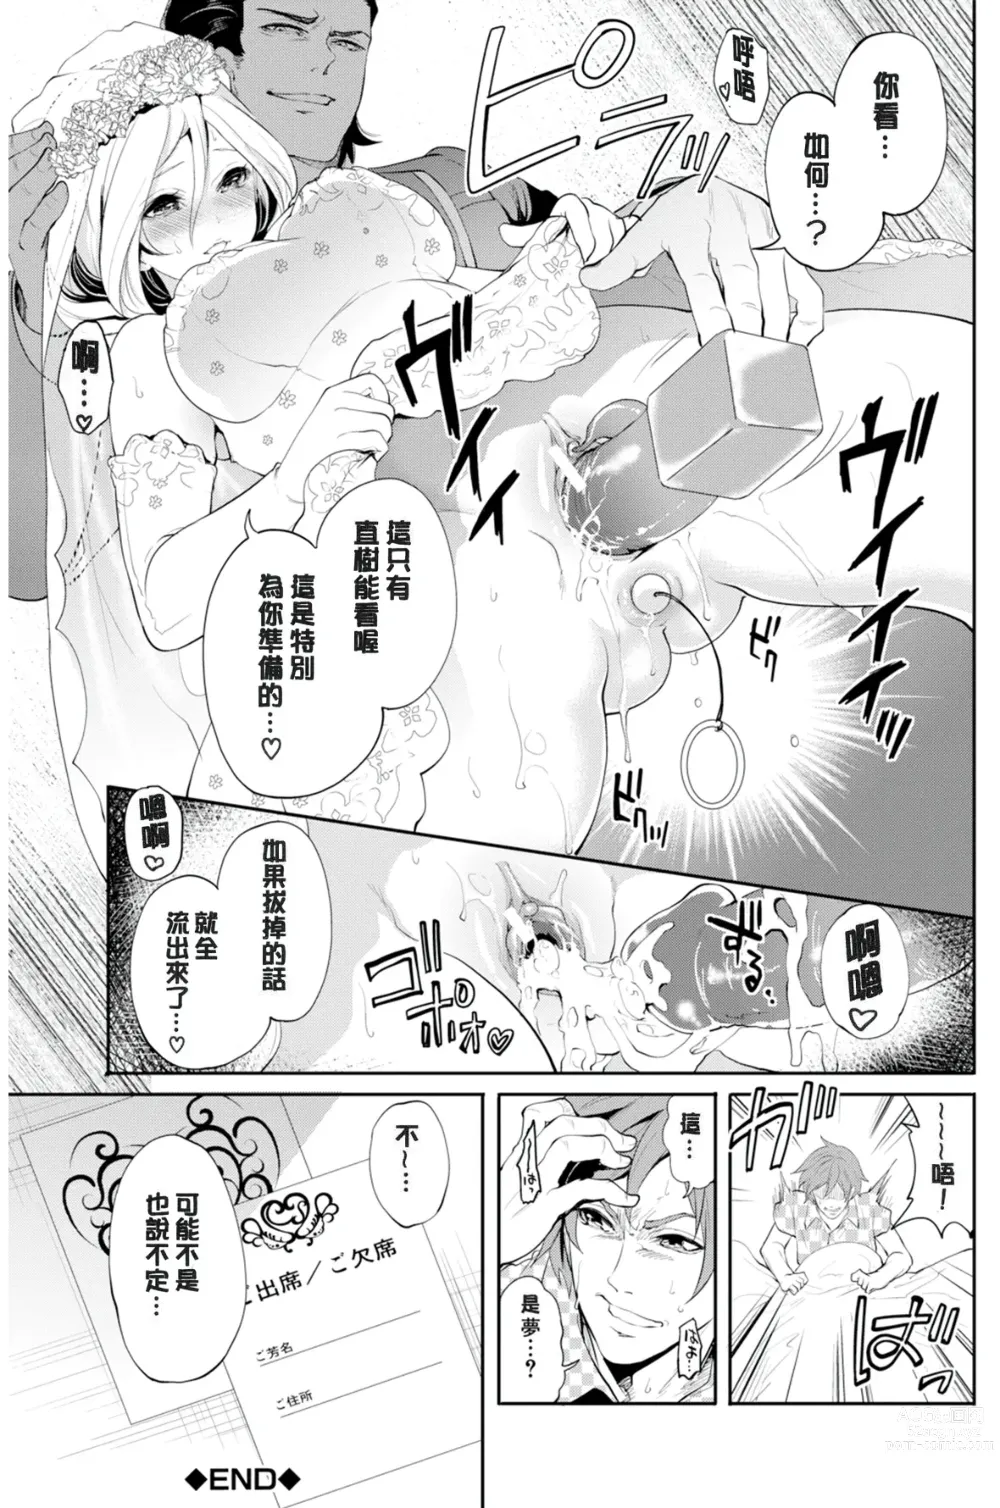 Page 205 of manga Suki na Ko ga, Betsu no Otoko to